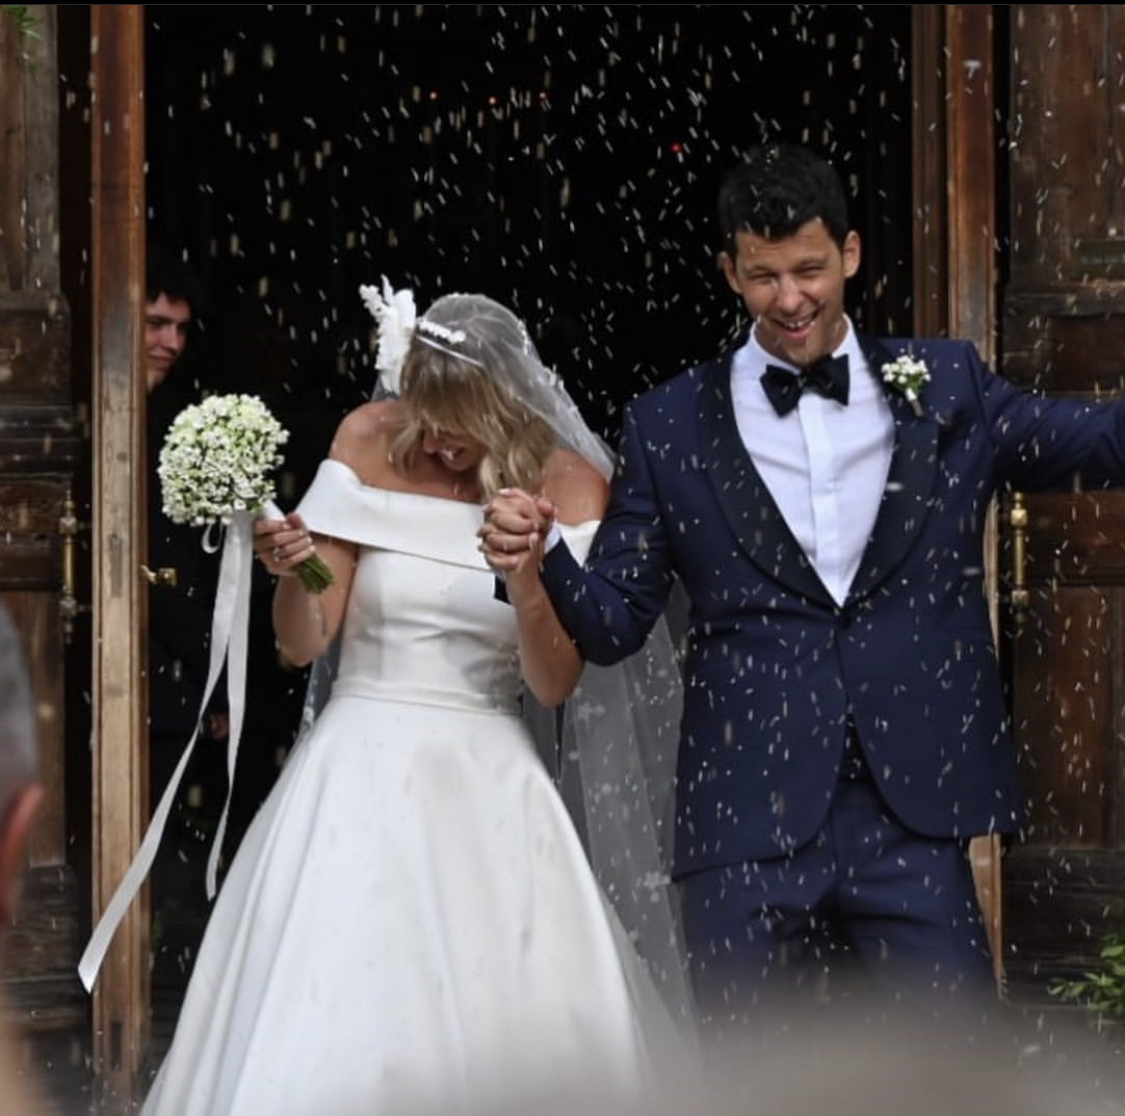 Federica Pellegrini e Matteo Giunta hanno detto "Sì". La nuotatrice ed il suo allenatore si sono sposati a Venezia (VIDEO)